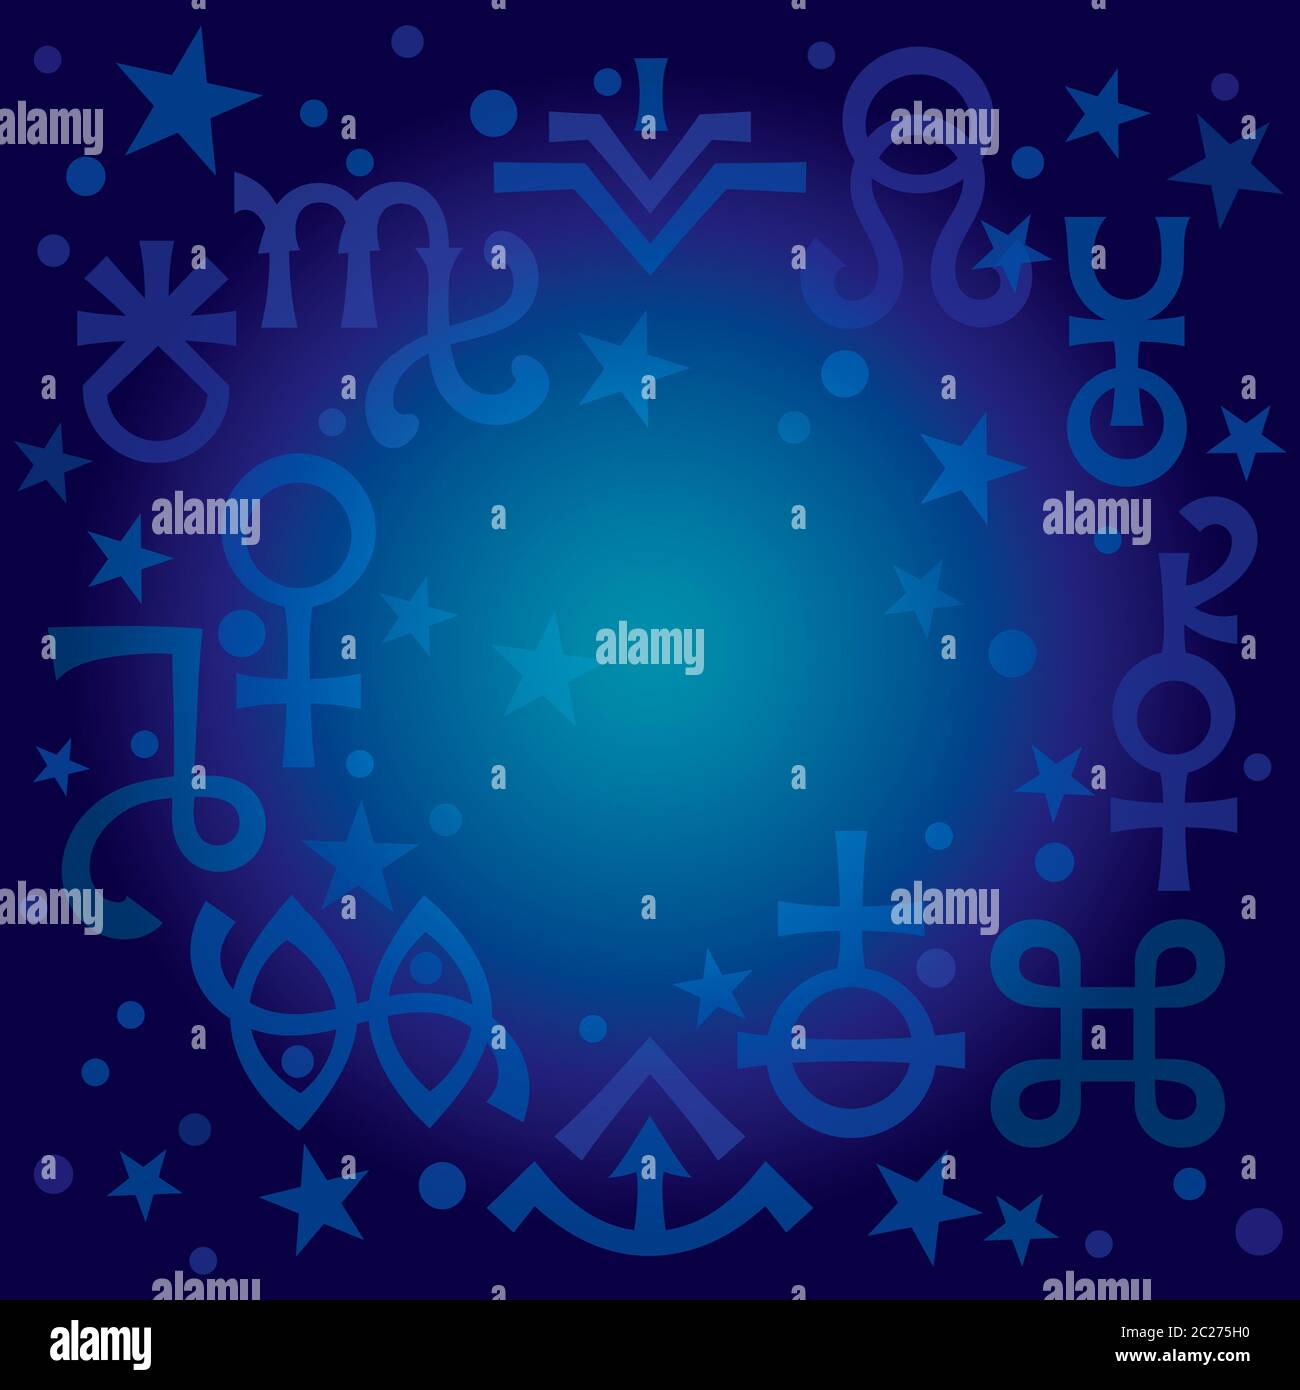 Diadème astrologique (signes astrologiques et symboles mystiques occultes), plan de fond de modèle céleste avec des étoiles. Banque D'Images